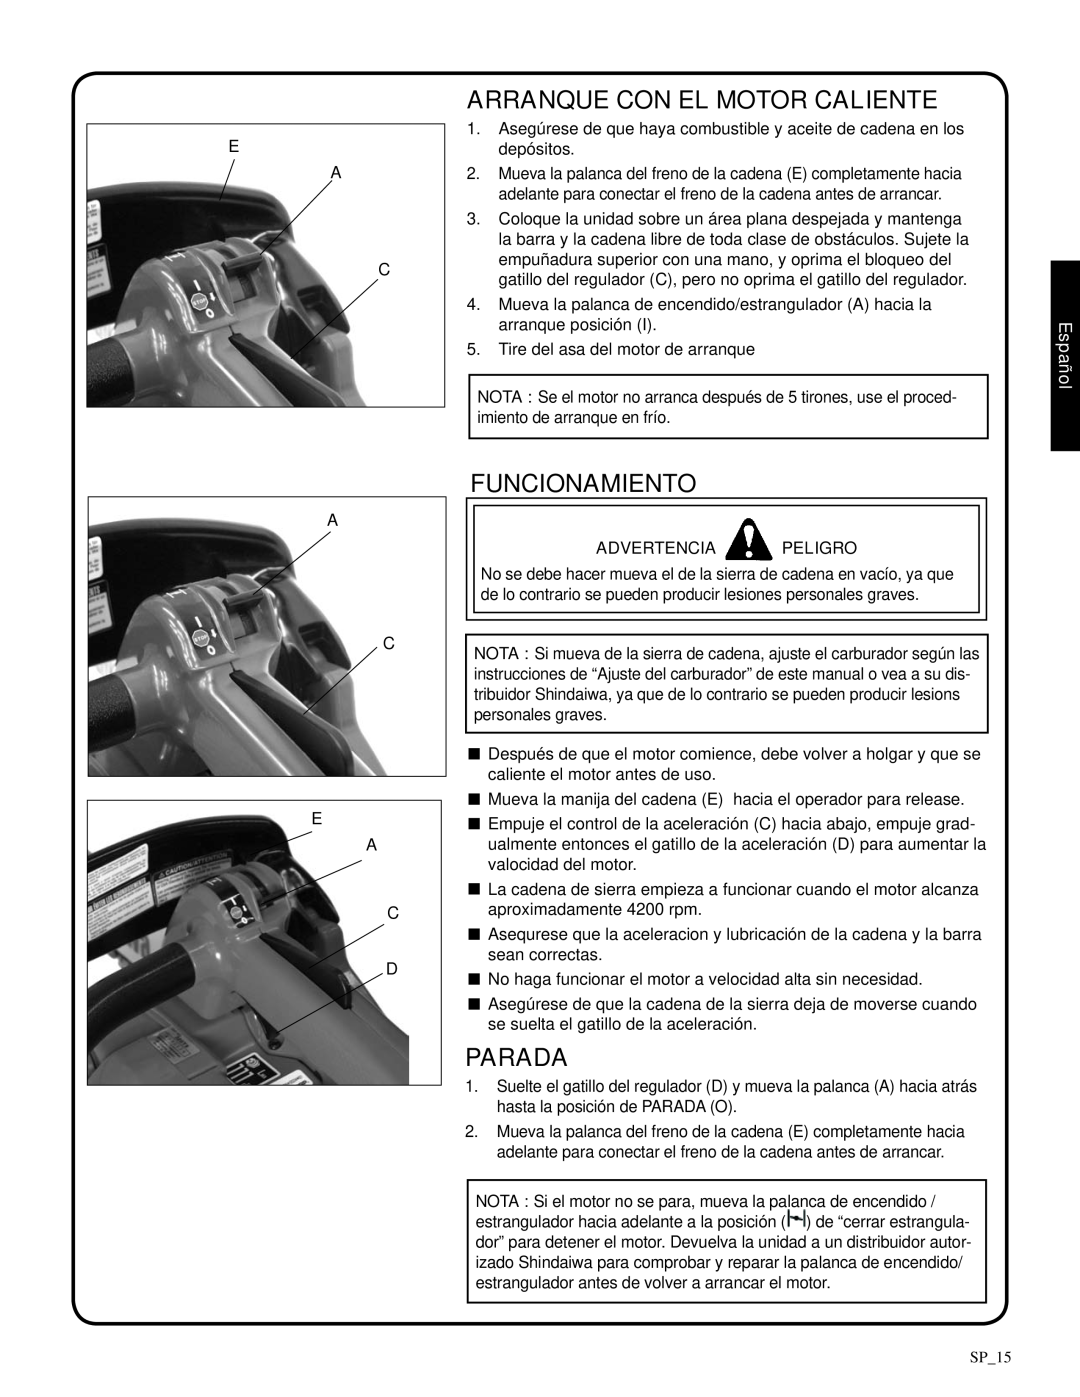 Shindaiwa 326T, 82085 manual Arranque con el motor caliente, Funcionamiento, Parada, Advertencia Peligro, Español 